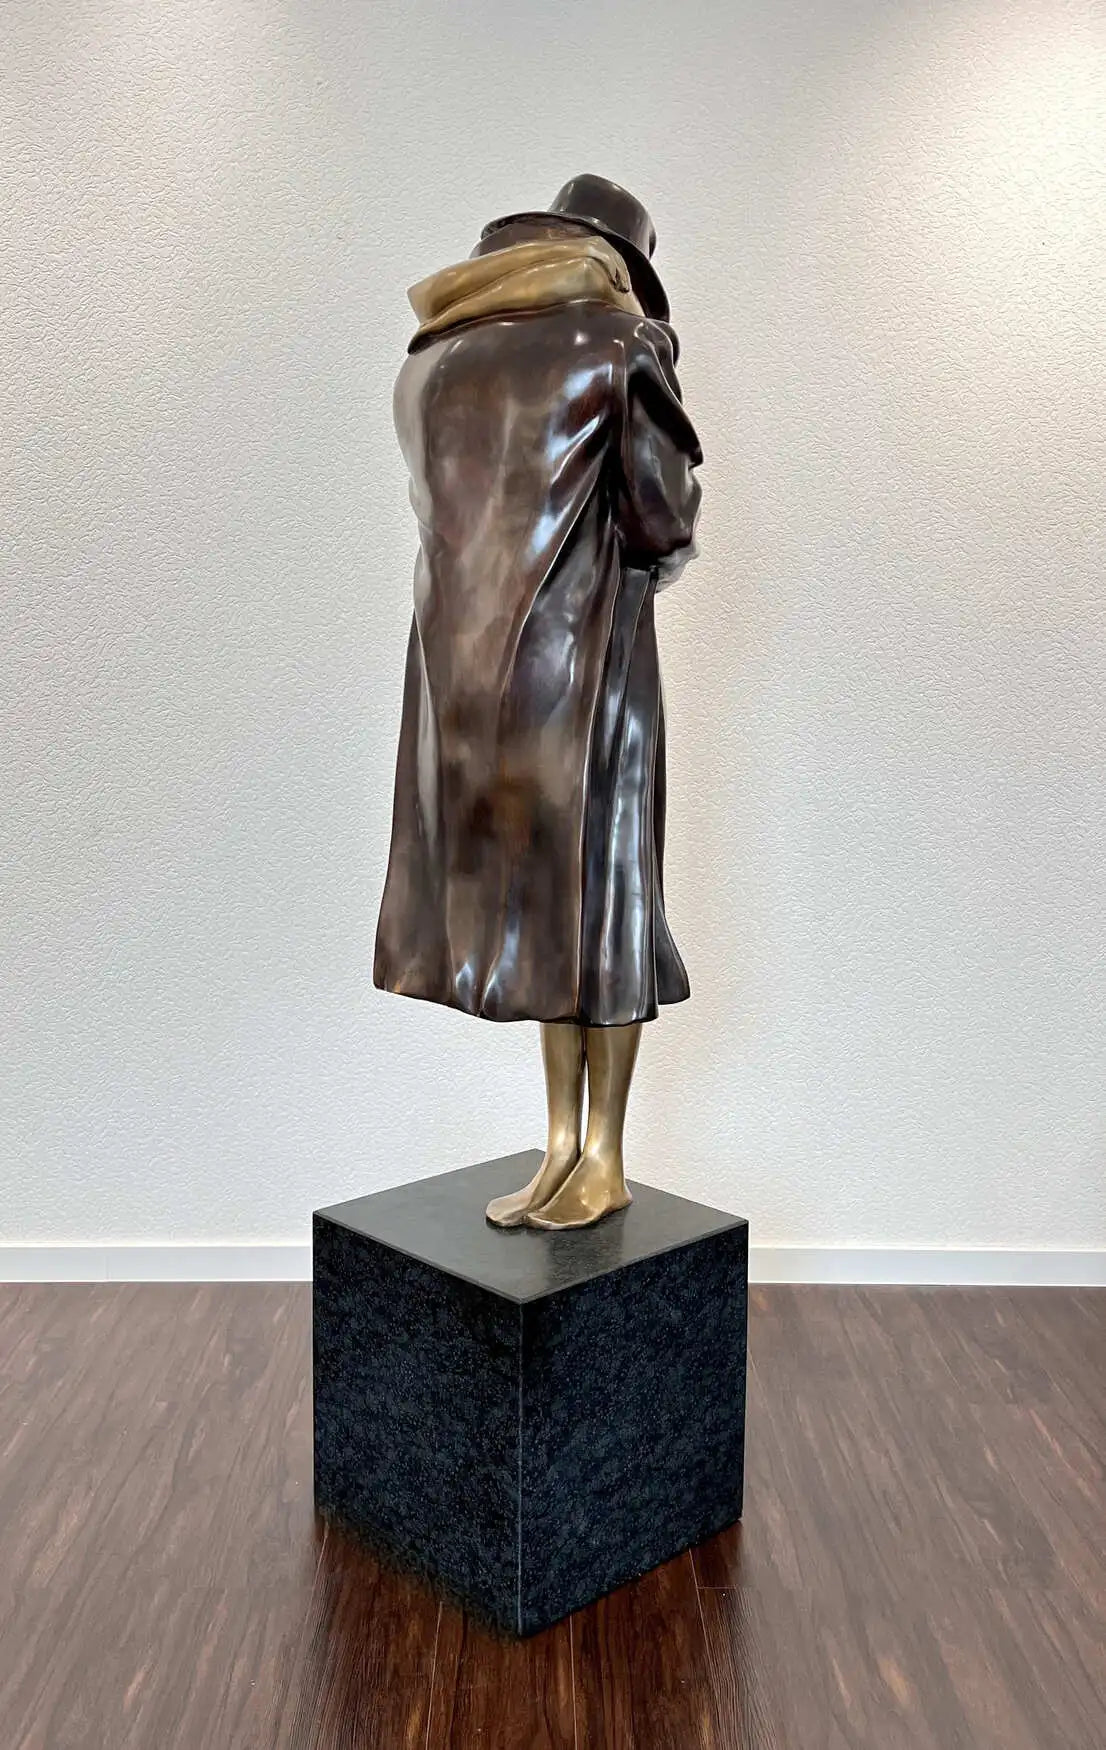 Bruno Bruni  La Partenza Großplastik Bronzeletztes Exemplar weltweit - Galerie Vogel